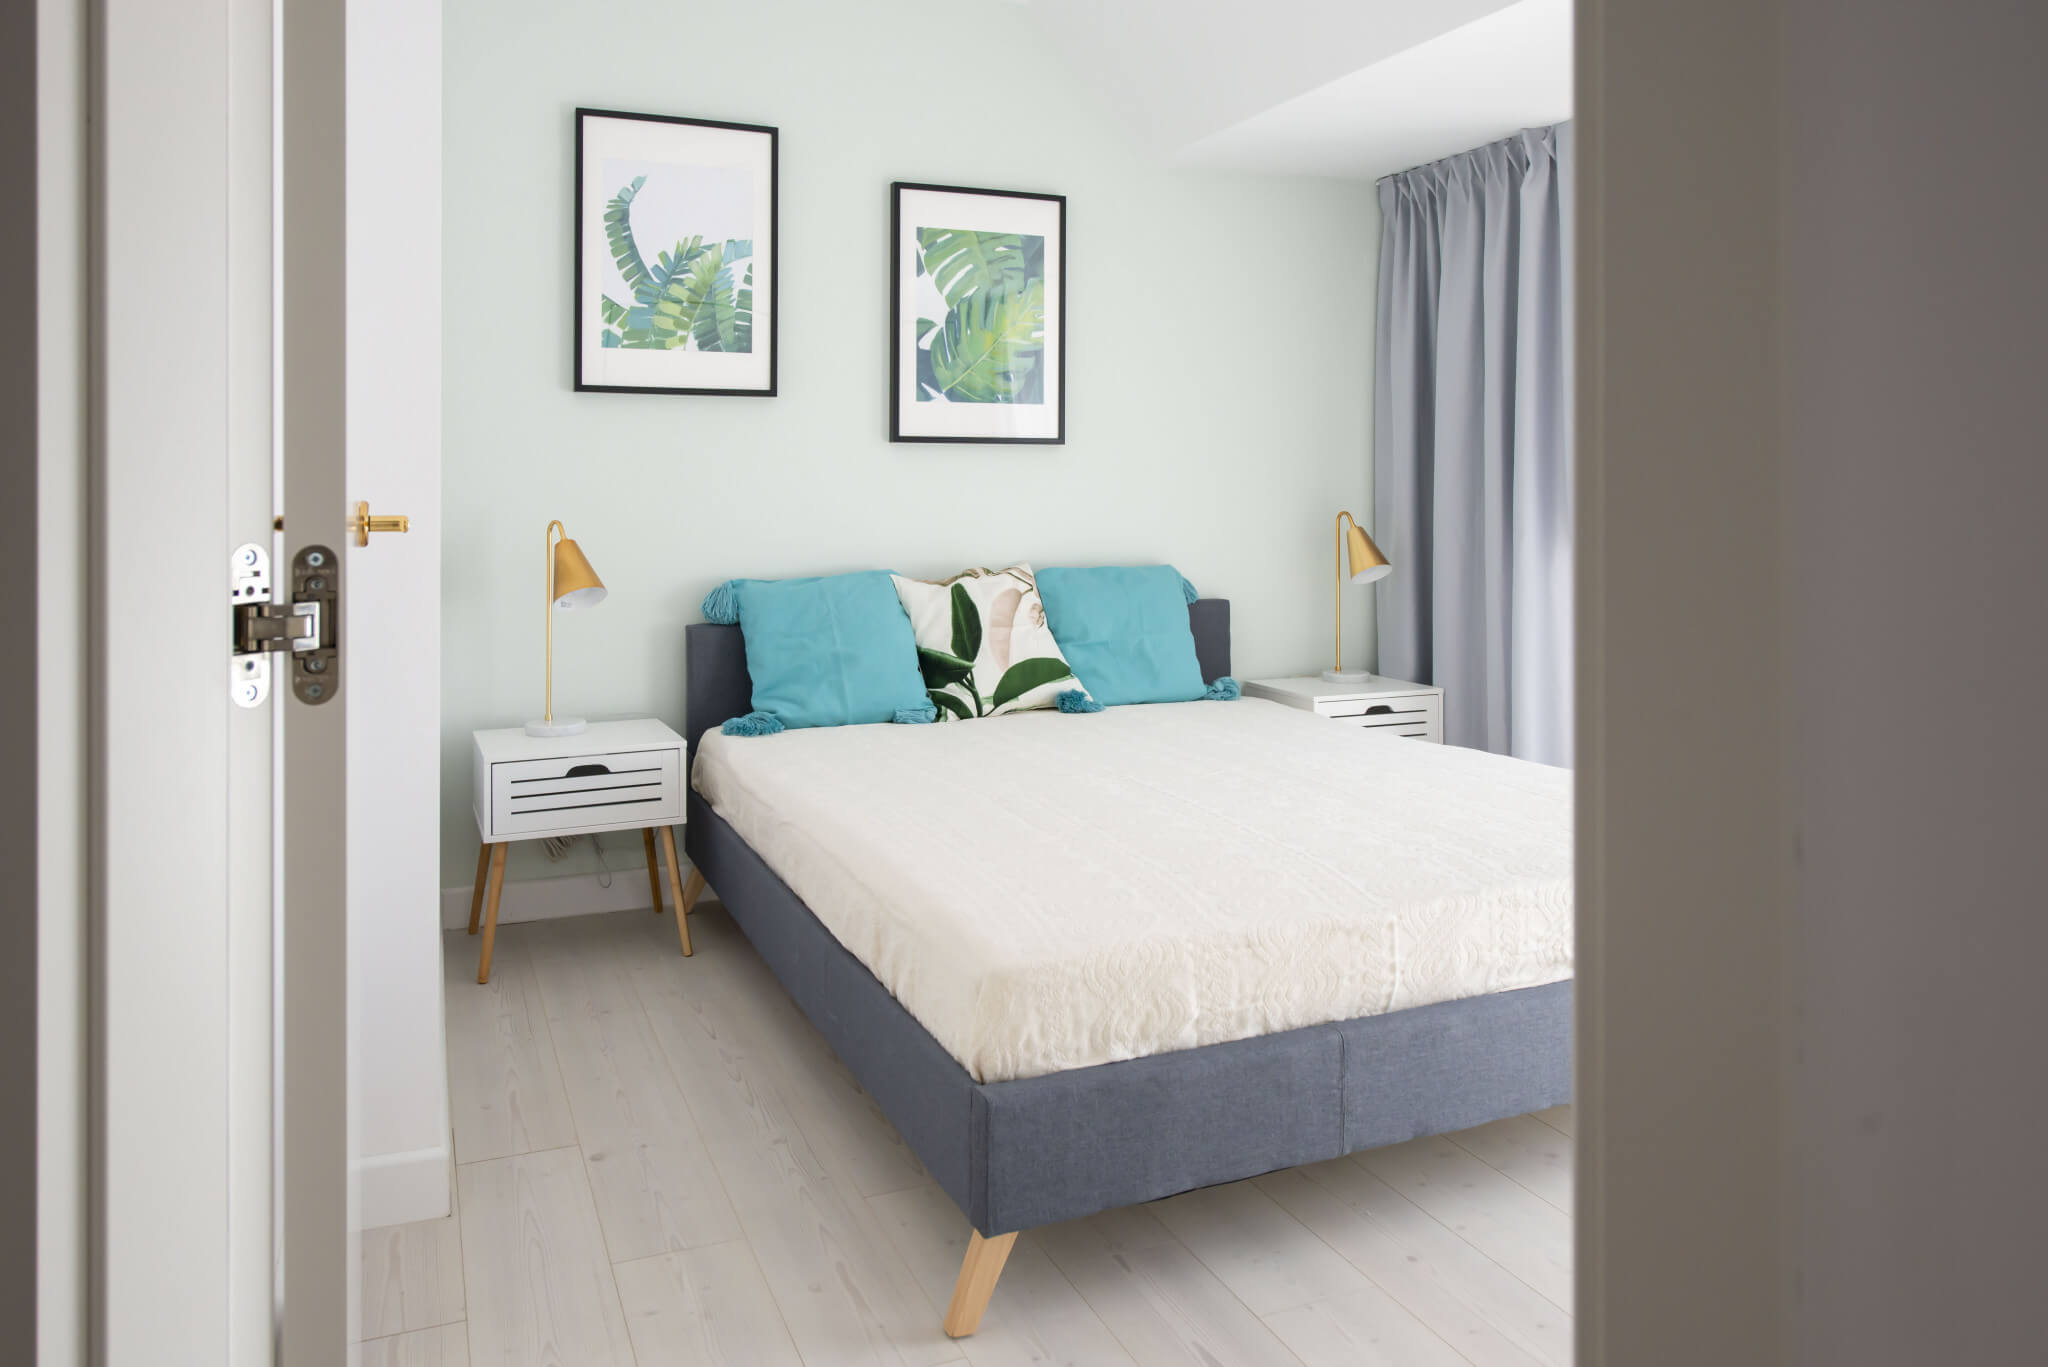 Cambio de imagen de un apartamento de alquiler_proyecto de interiorismo dormitorio principal